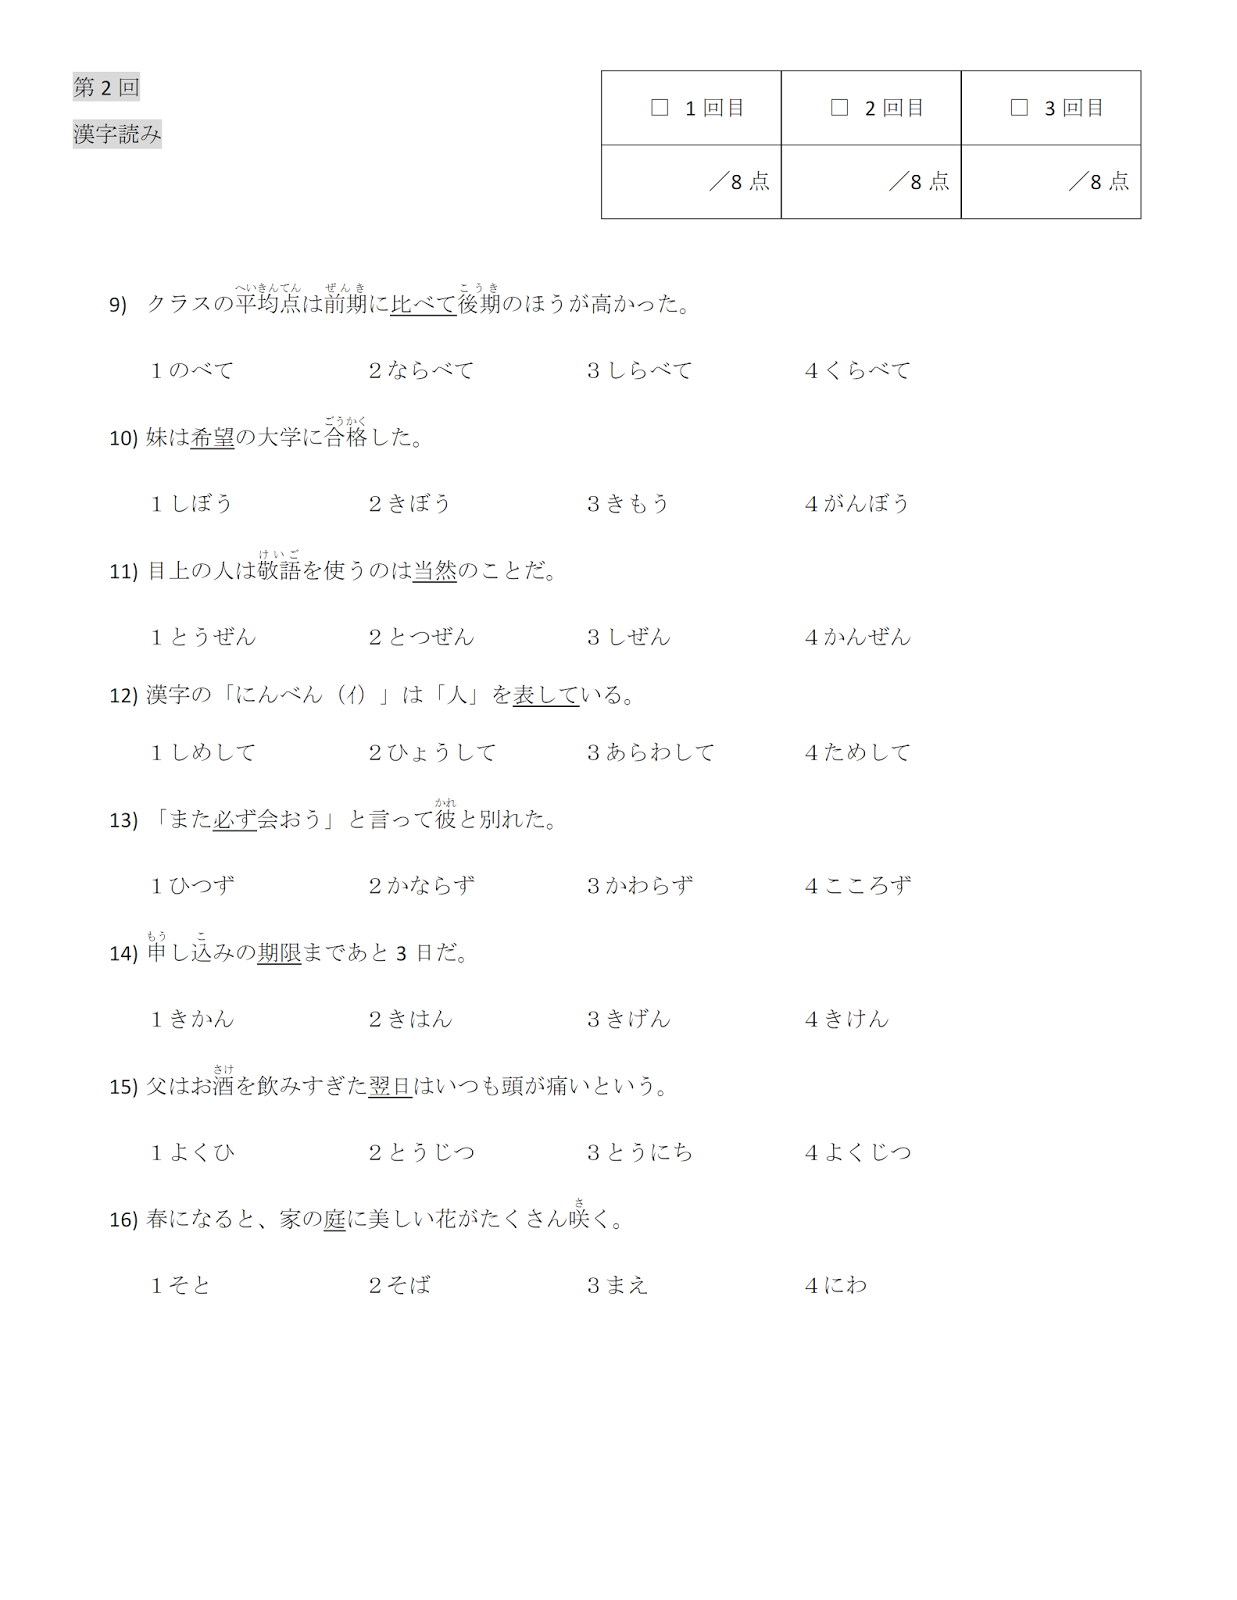 日カン友好サイト N3の漢字読みの問題